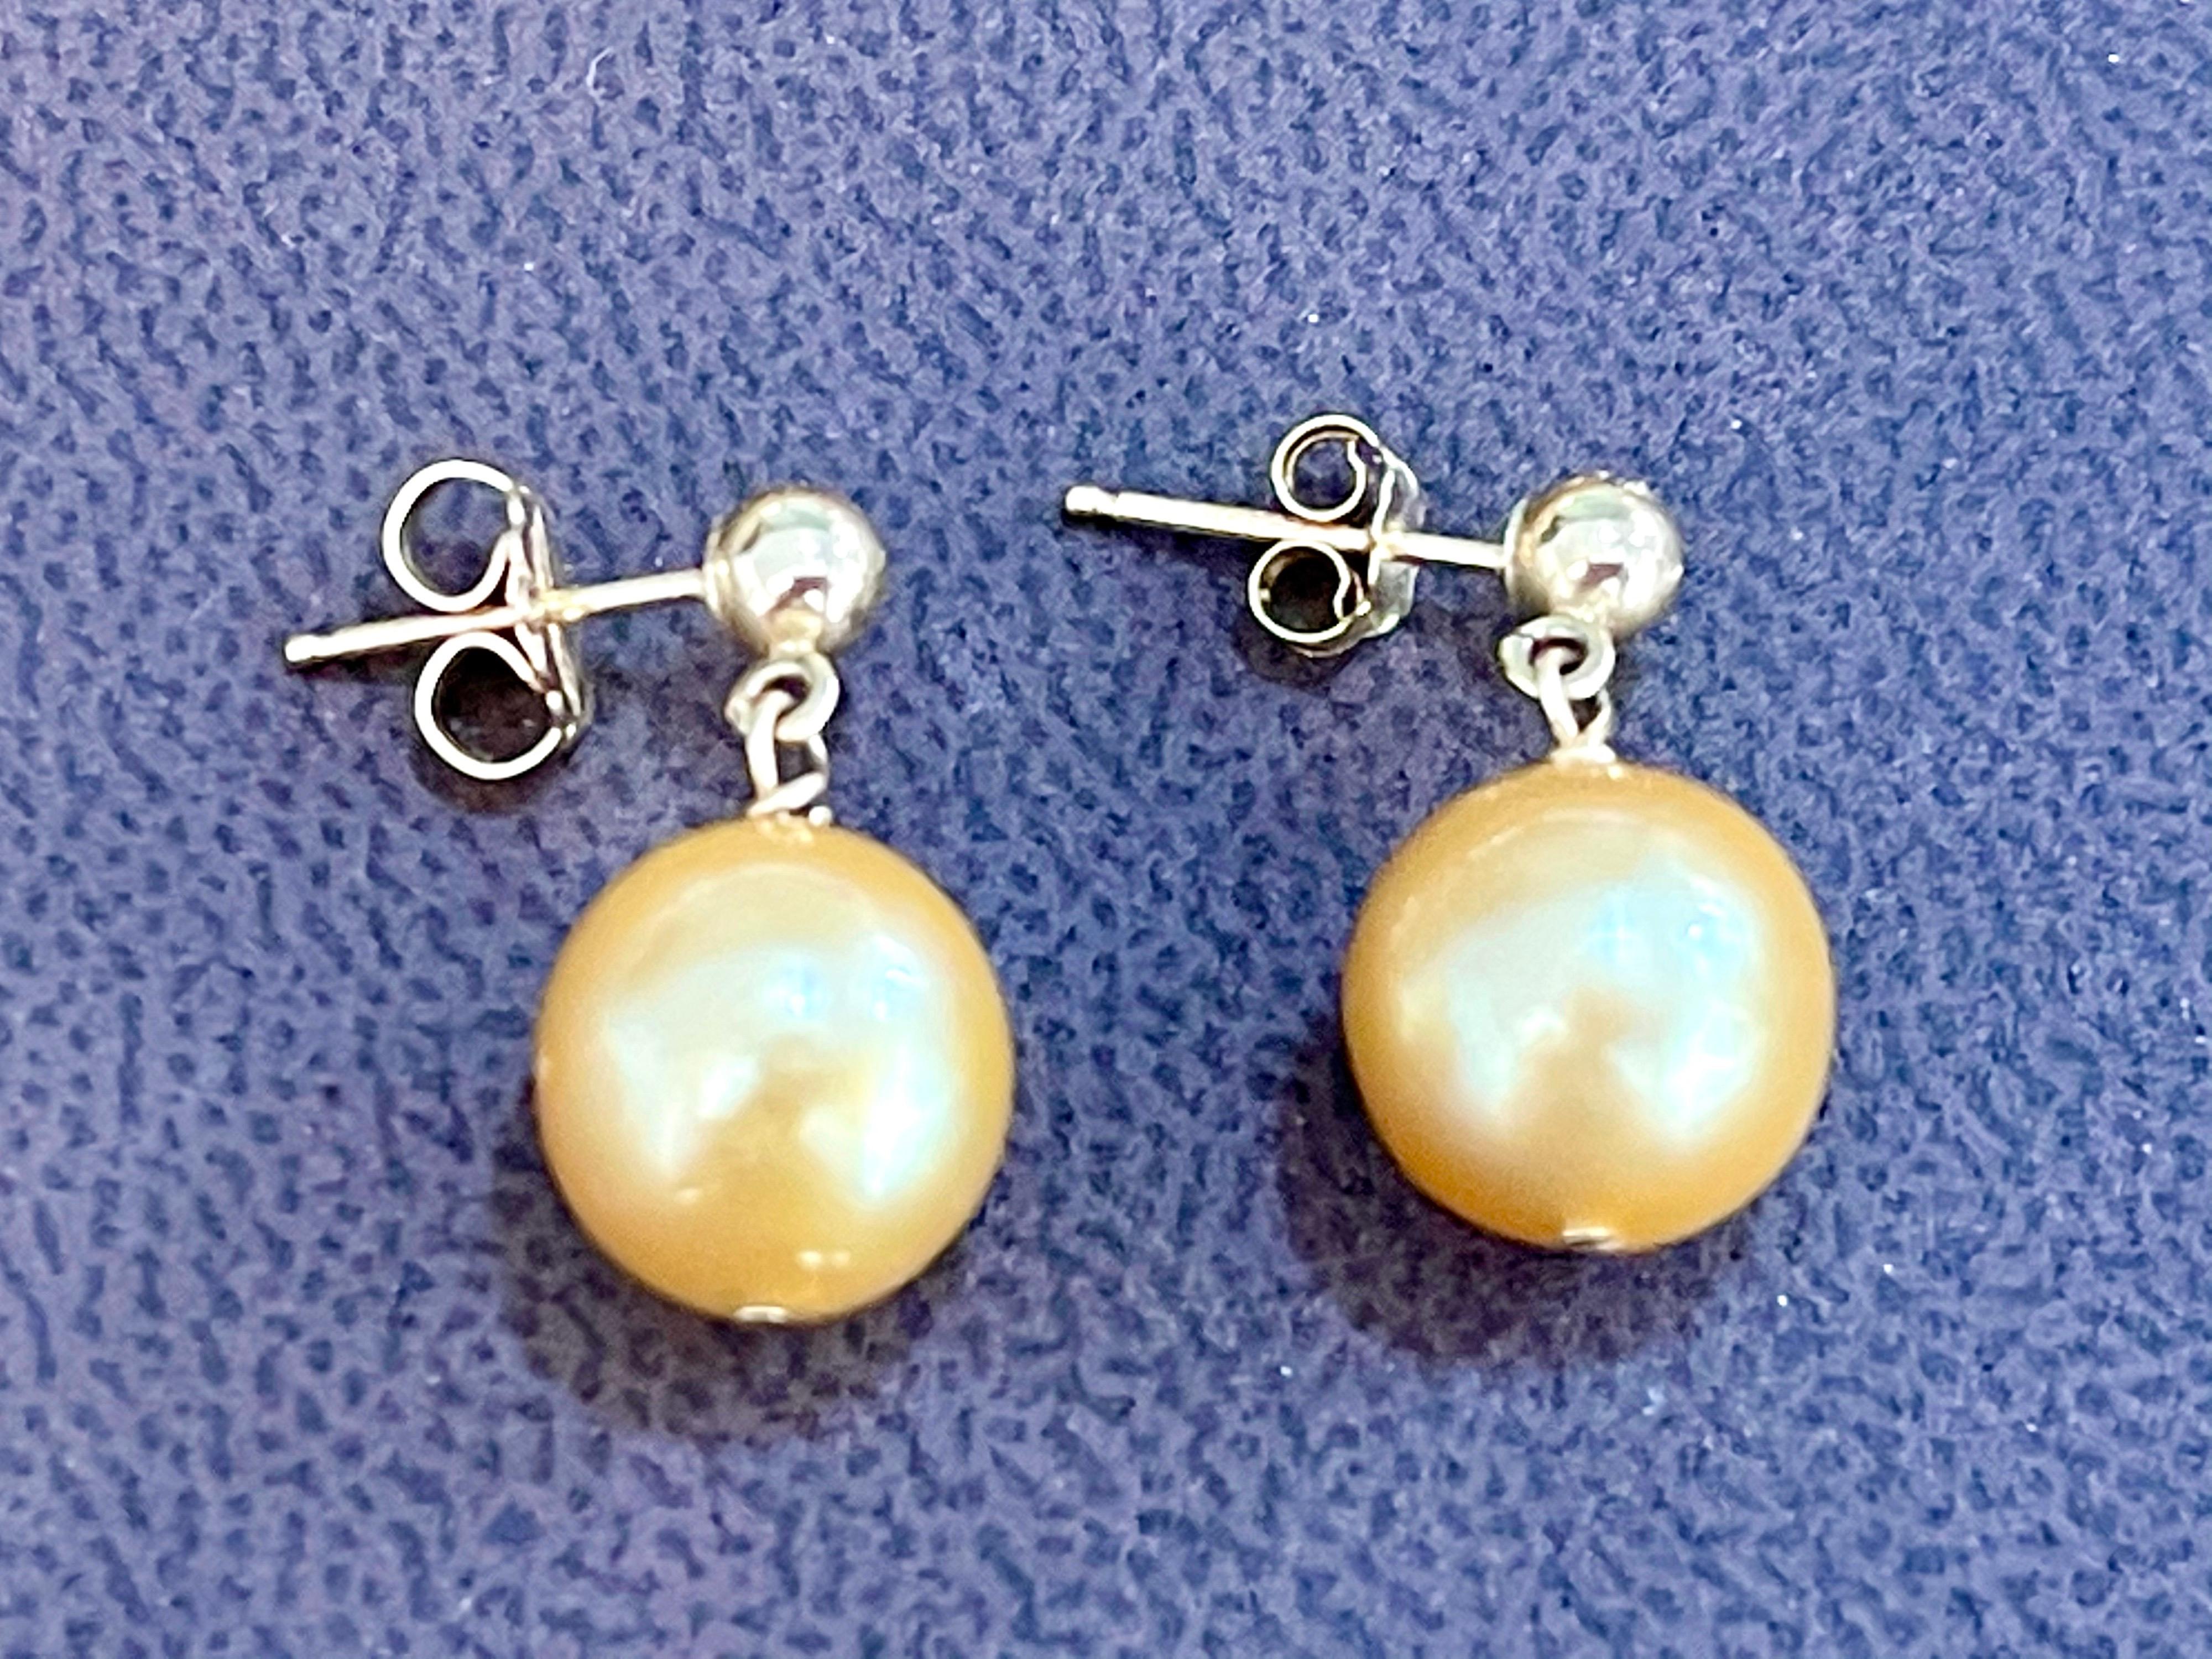 
10 MM Golden South Sea  Boucles d'oreilles perles en or jaune 14 carats
Toutes les perles sont absolument propres et ne présentent aucun défaut. 10 mm environ. 
Petit clou en or au sommet de la boucle d'oreille qui repose sur le lobe de l'oreille